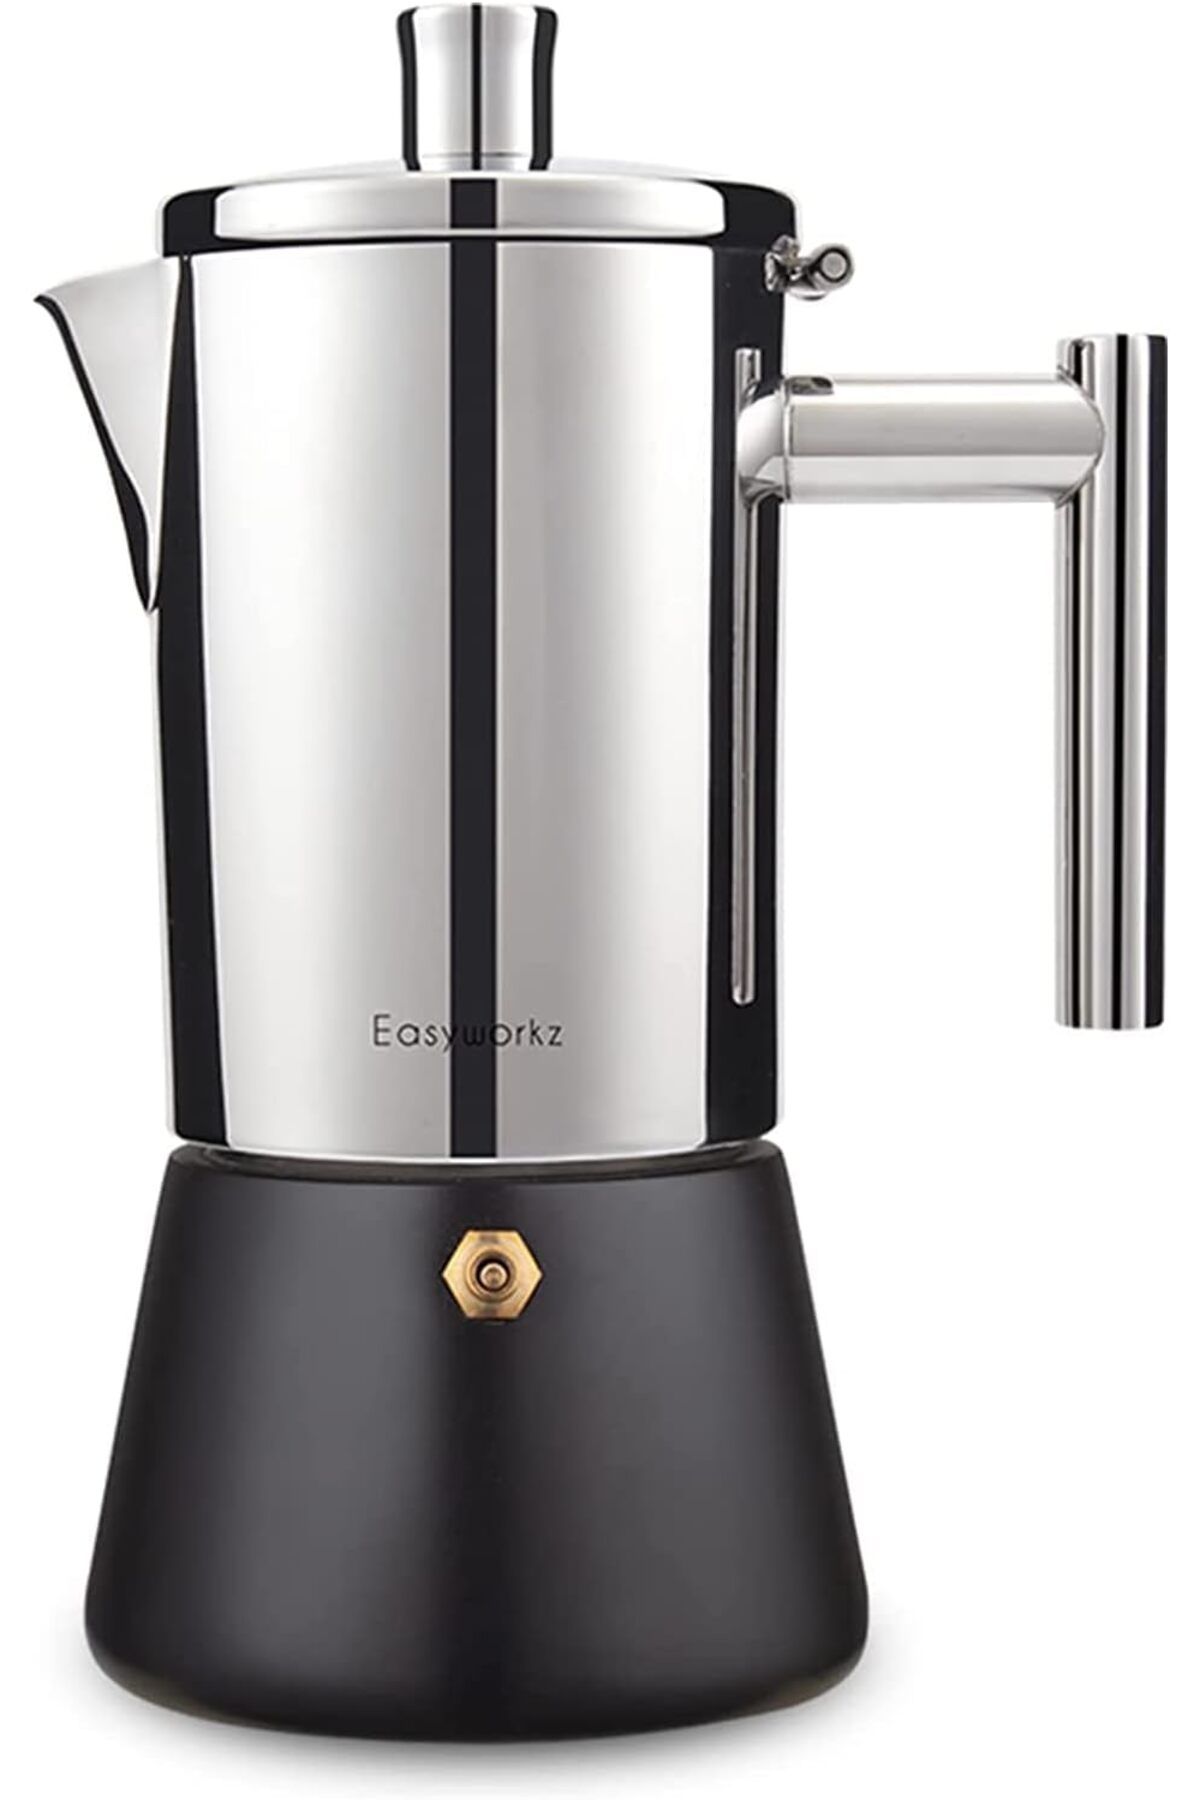 Franco Easyworkz Diego Kahve makinesi Espresso makinesi İtalyan Paslanmaz Çelik 4 Bardak, 200 ml